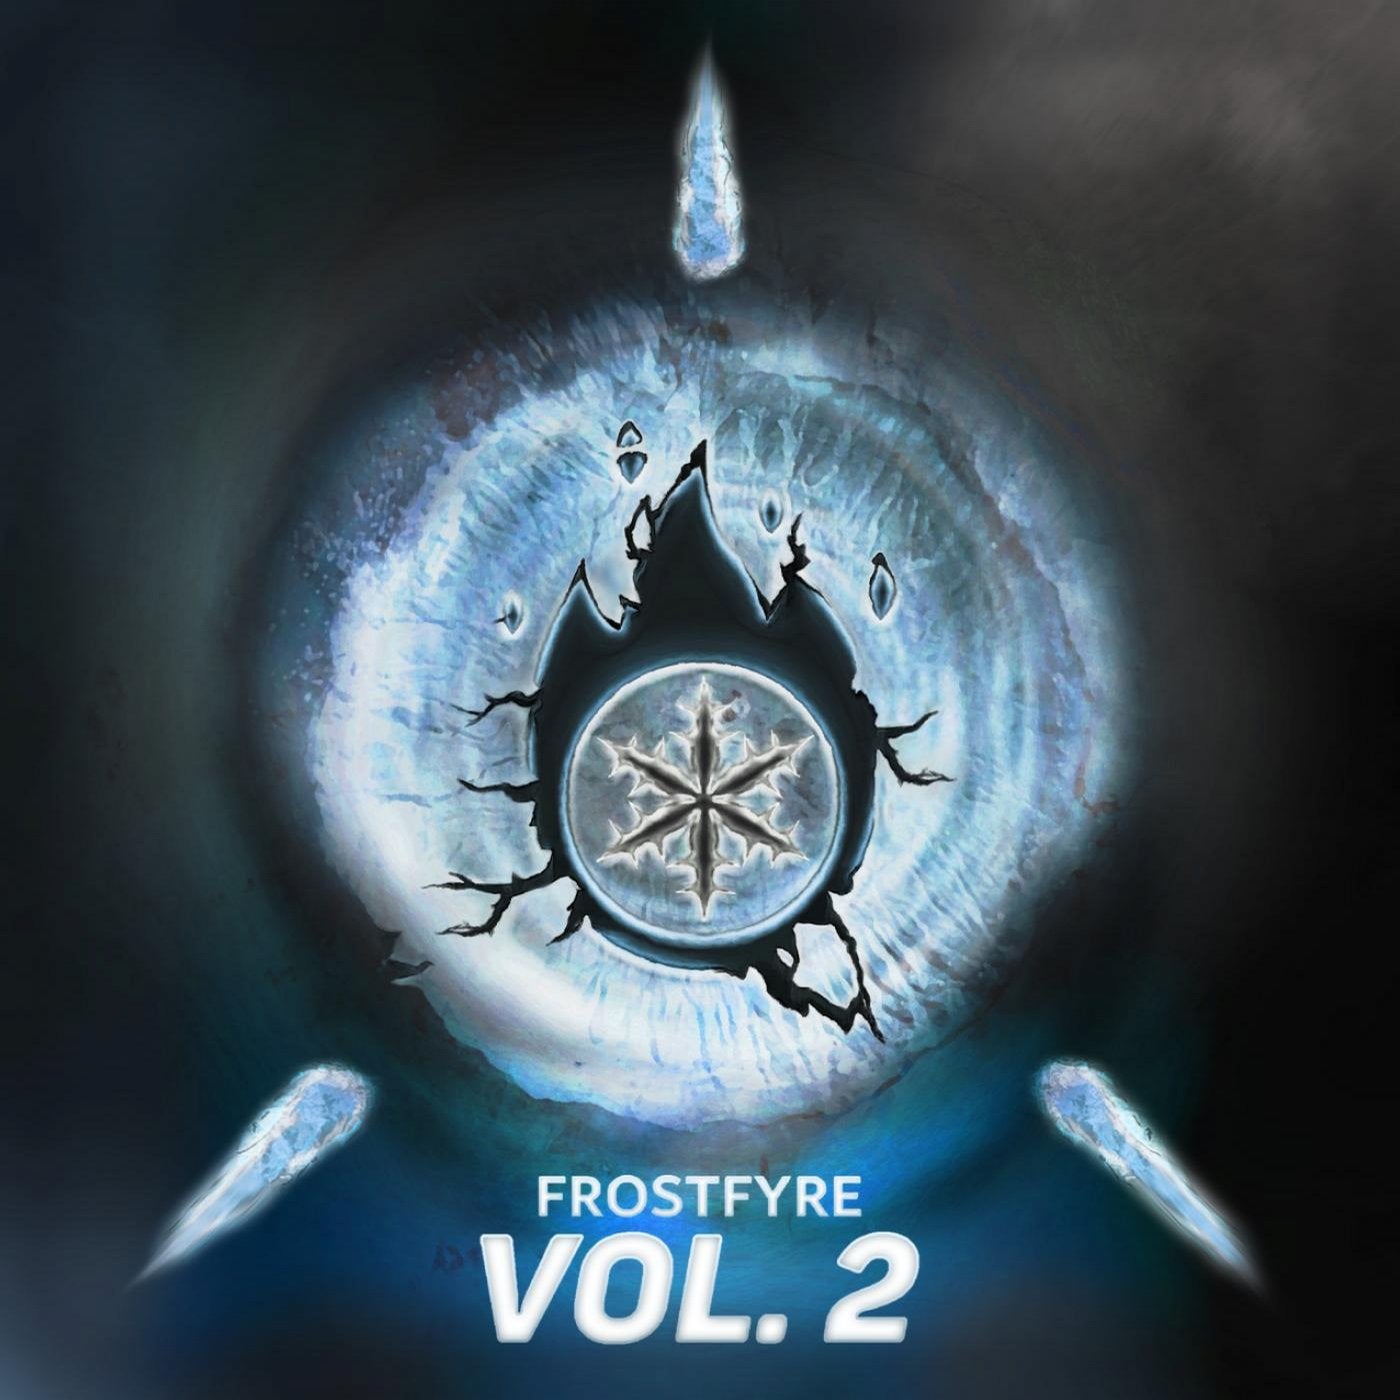 Frostfyre Vol. 2